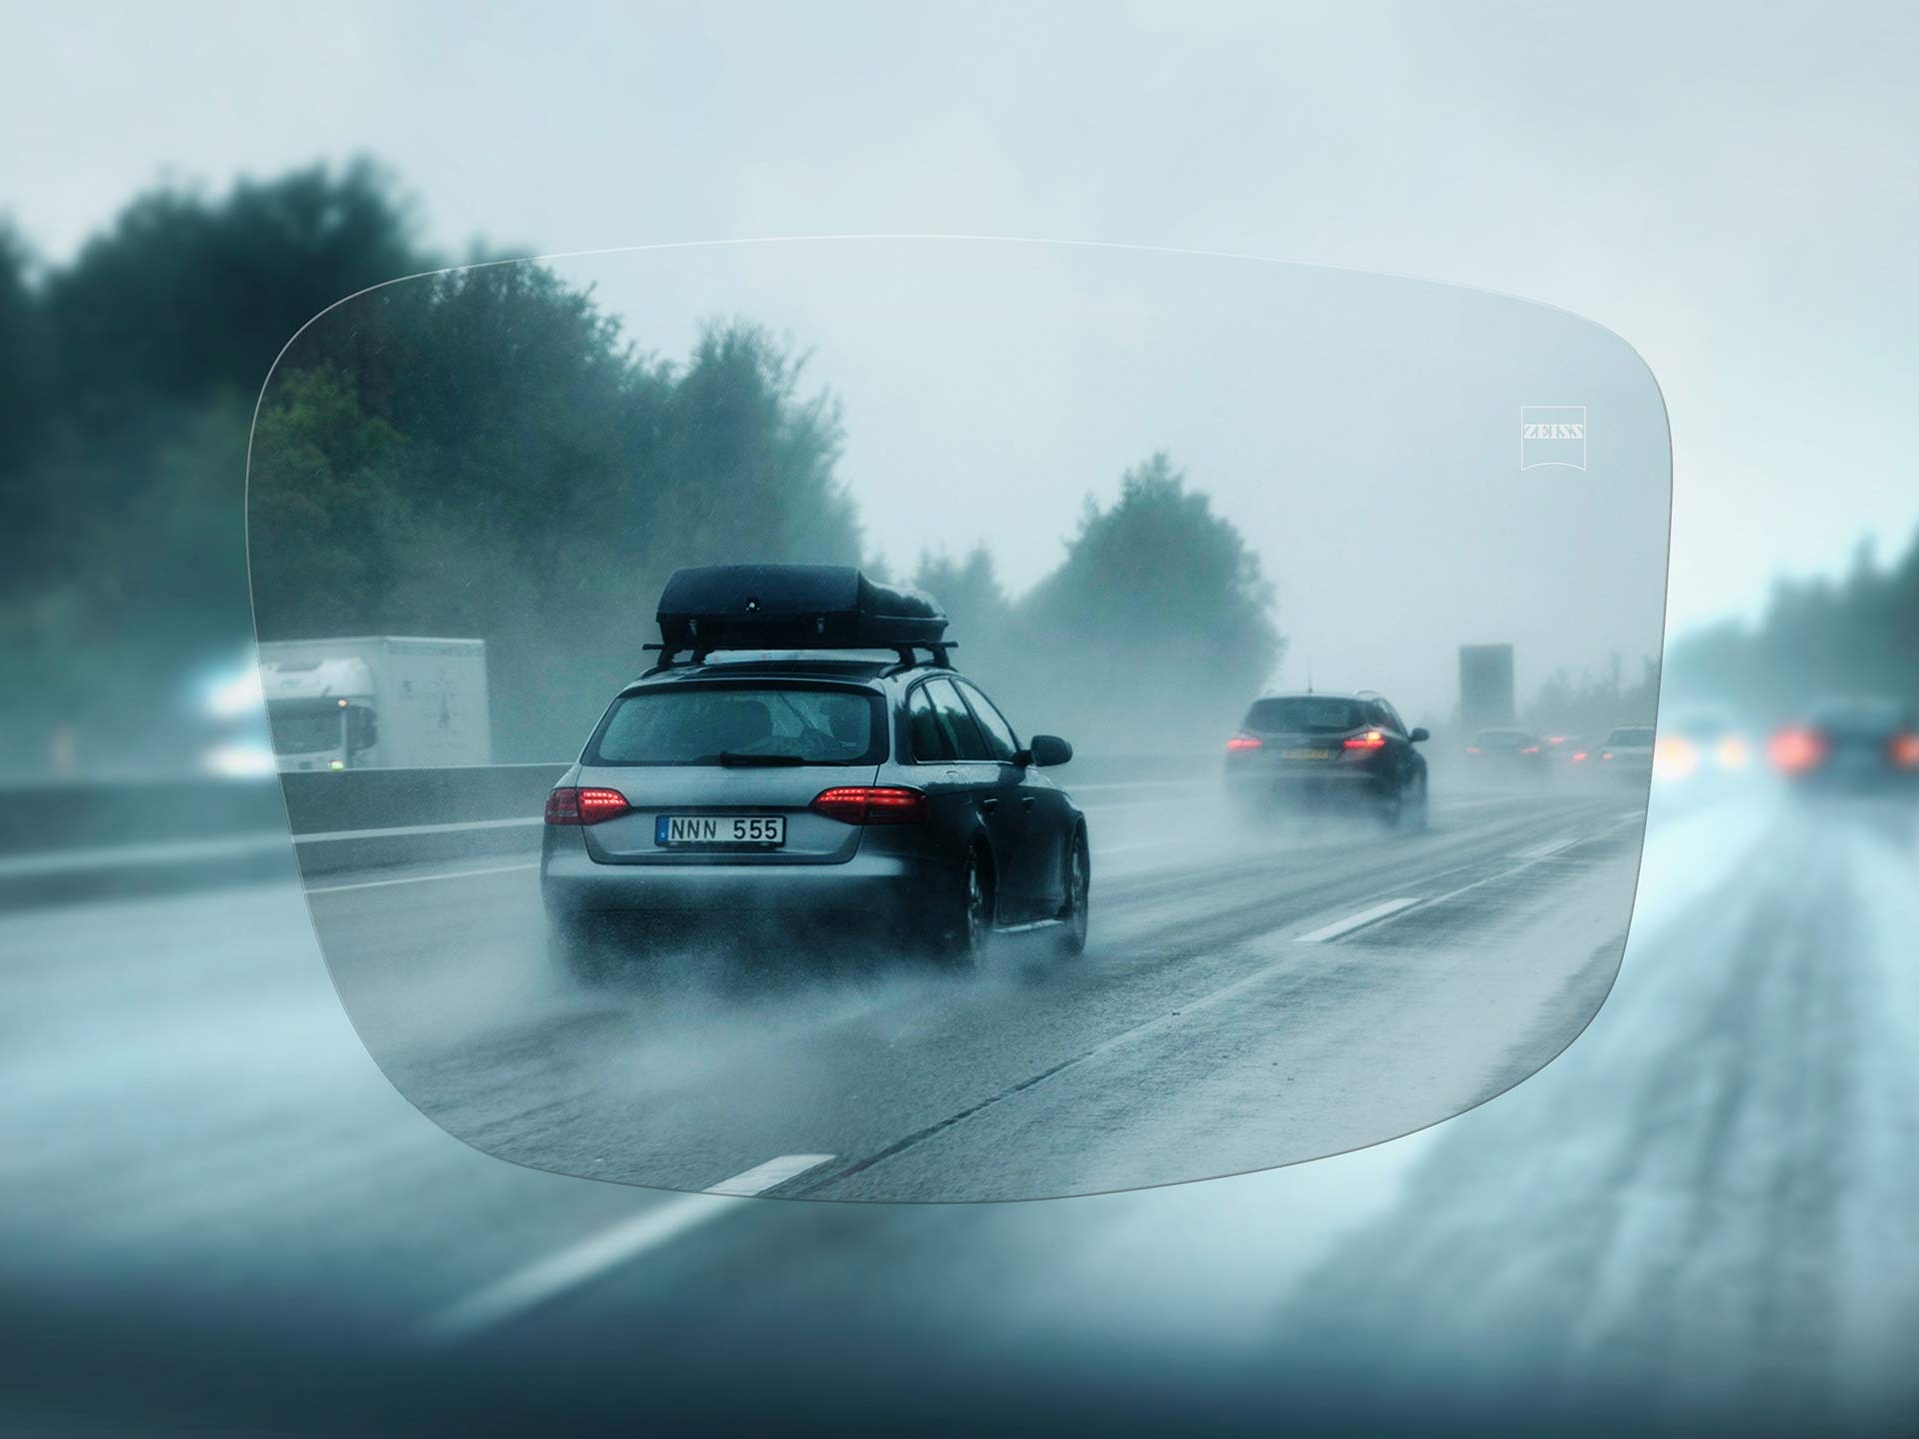 Widok na autostradę w deszczowy dzień przez soczewki jednoogniskowe ZEISS DriveSafe 